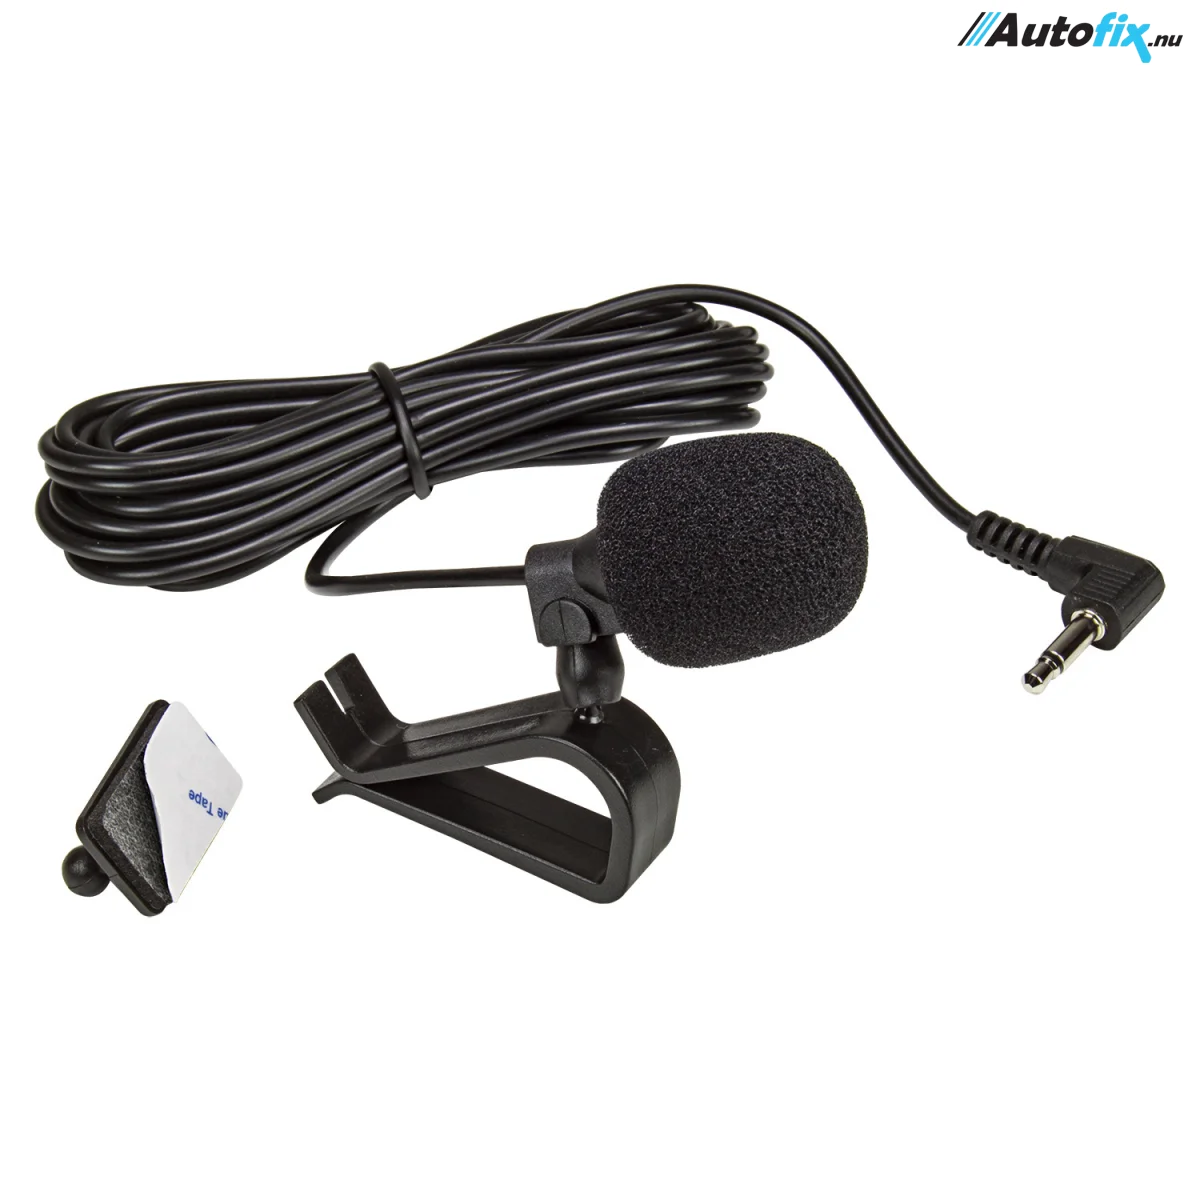 Mikrofon Til bil Med 3,5 Stik - Alpine/Clarion/JVC/Kenwood/Pioneer/Sony - Kabel meter - - Autofix.nu